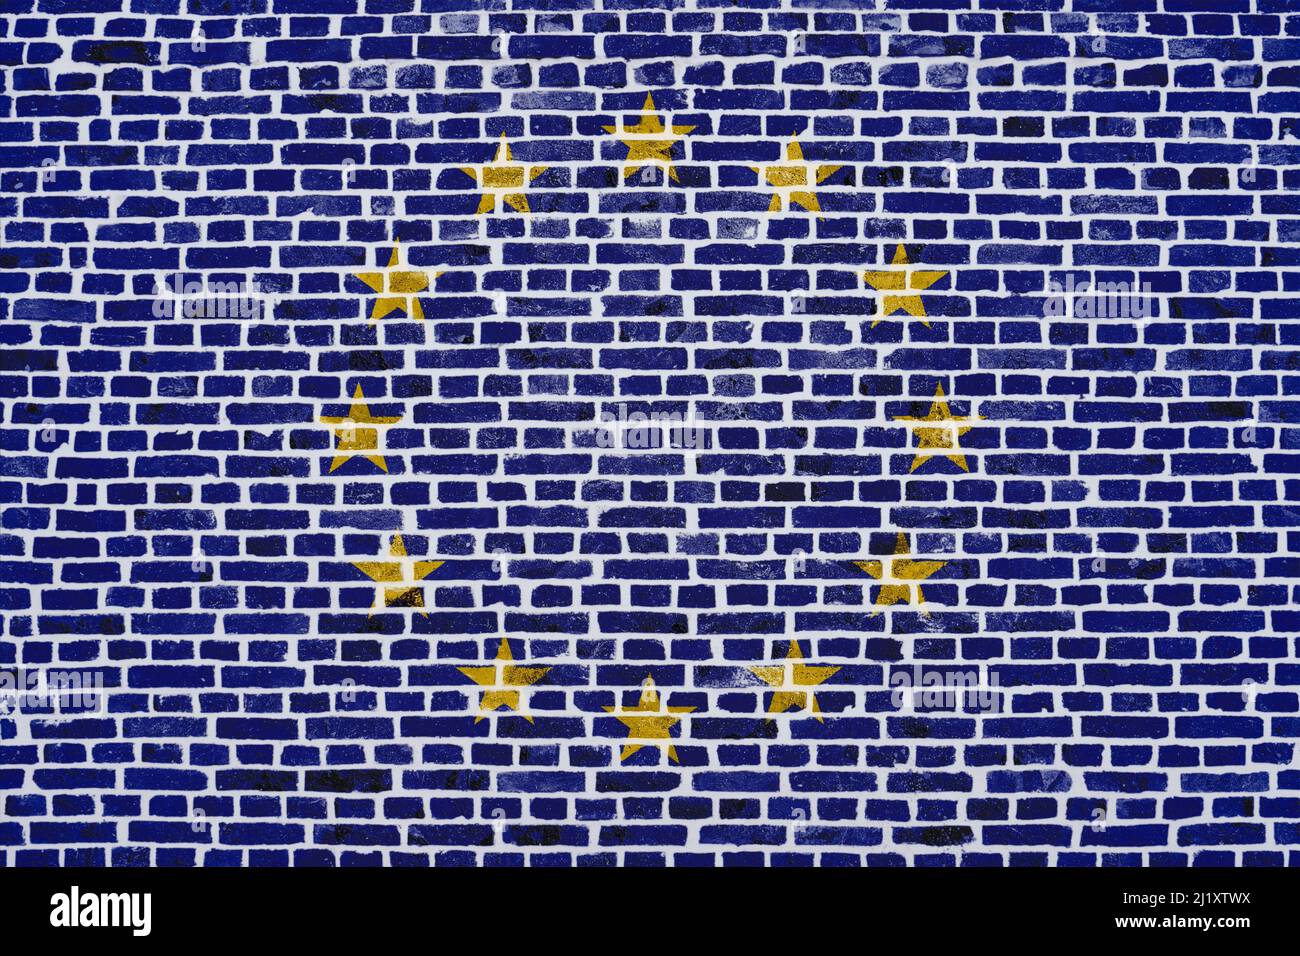 Gros plan sur un mur de briques avec le drapeau de l'Union européenne peint dessus. Banque D'Images